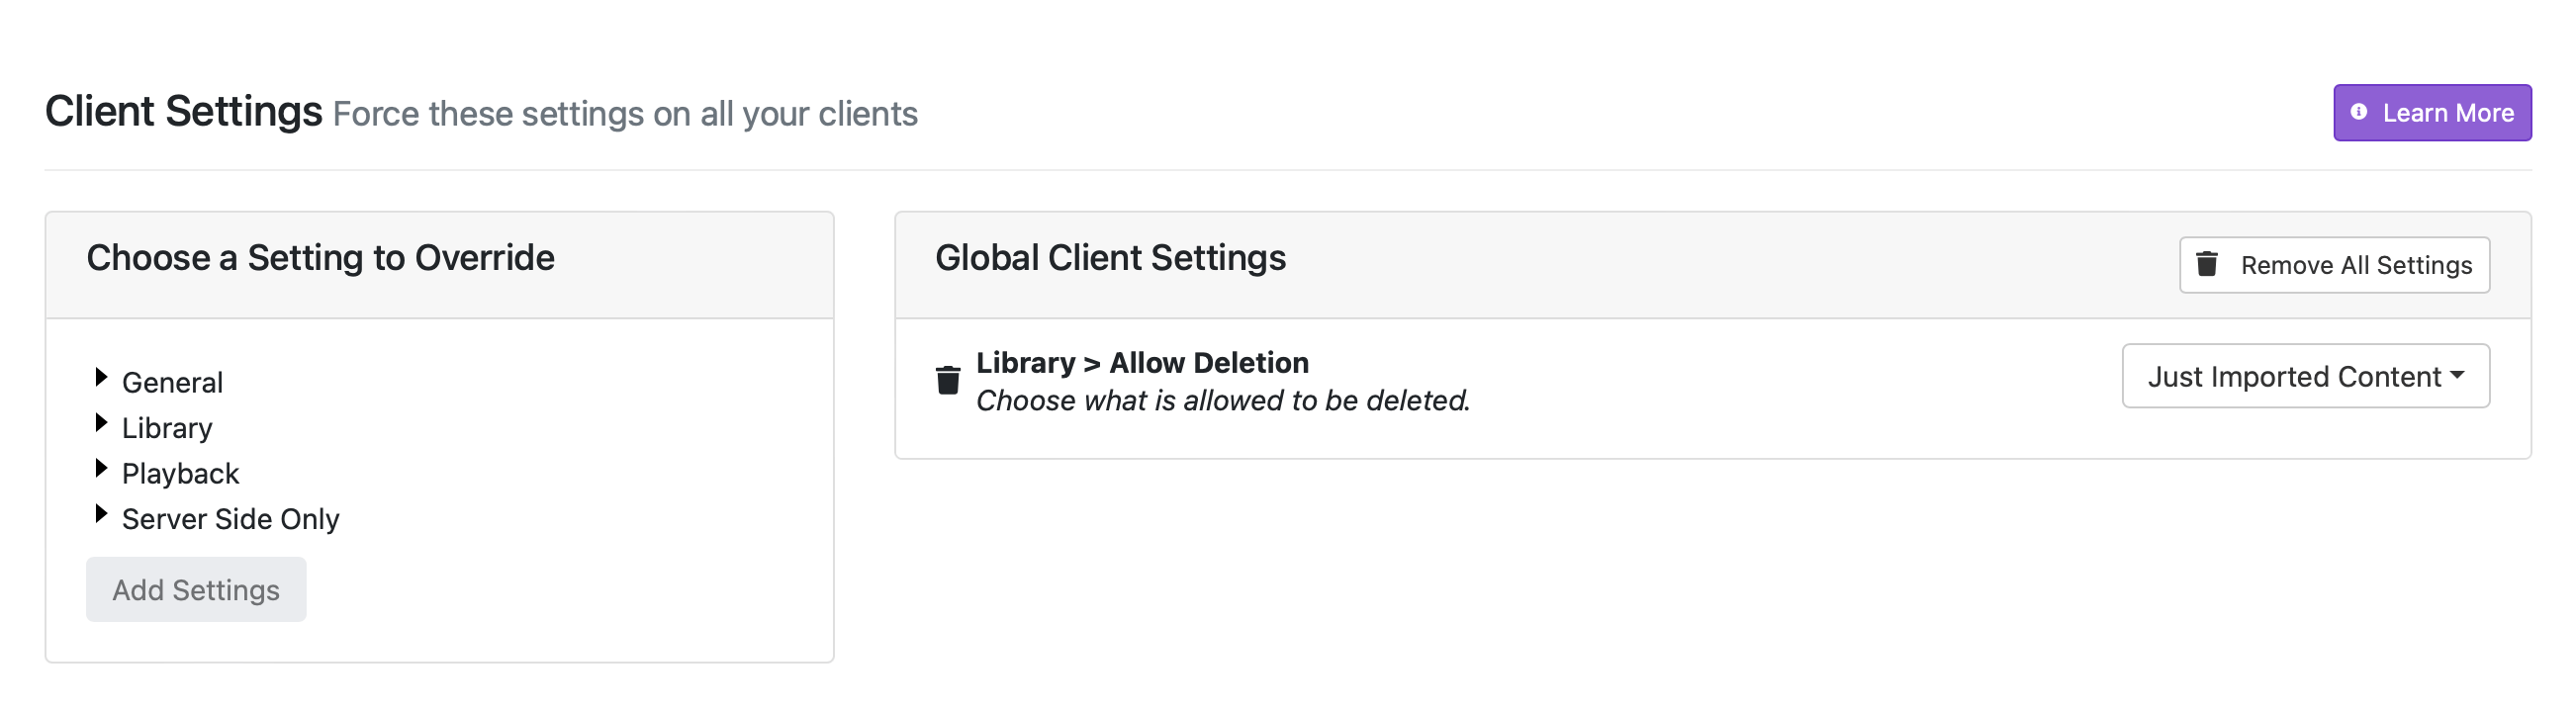 server side settings for delete